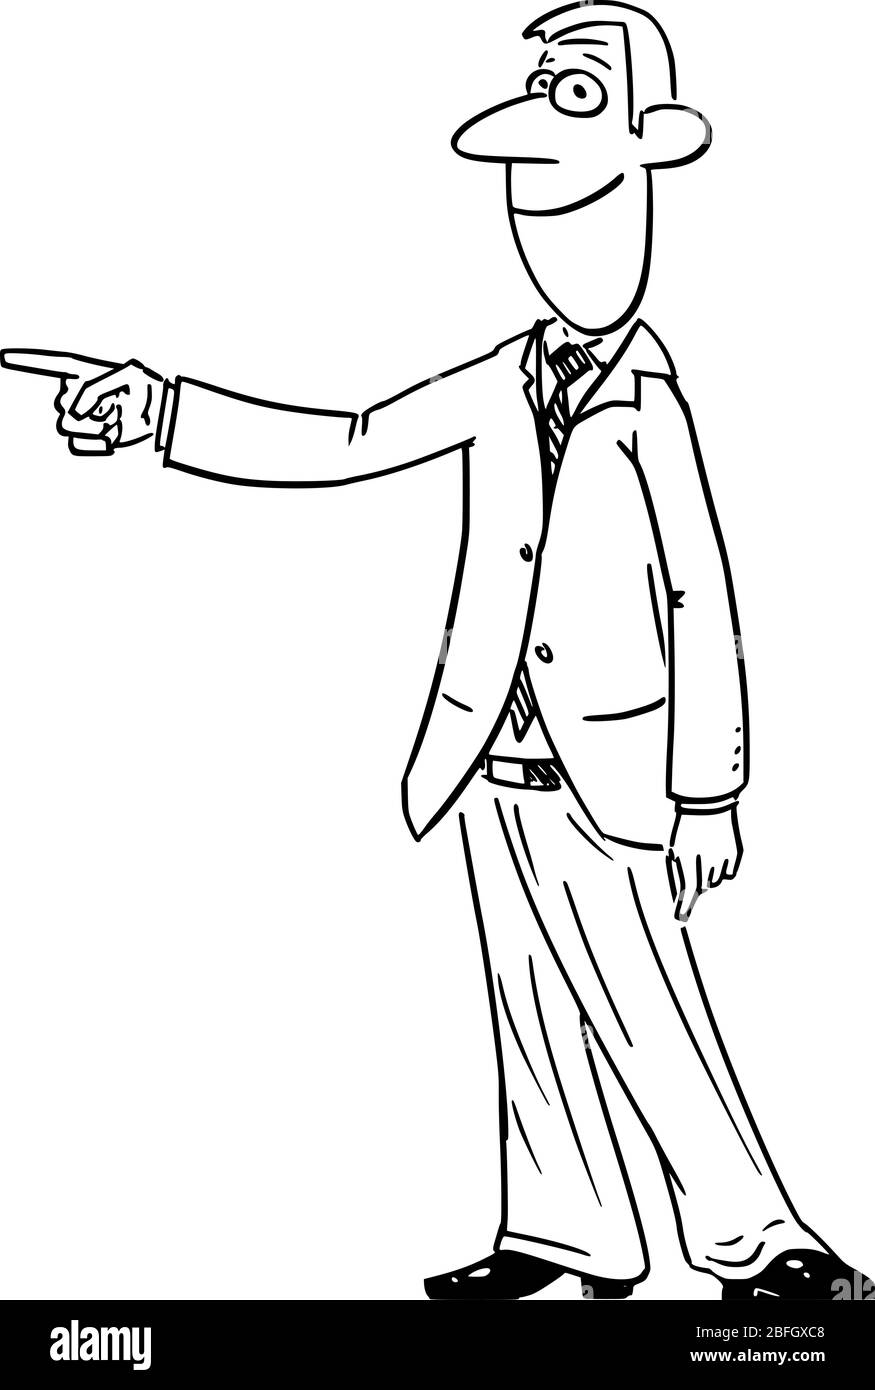 Vettore divertente fumetto disegno di uomo d'affari o mano o dito di punta, presentazione o mostrare qualcosa. Illustrazione Vettoriale